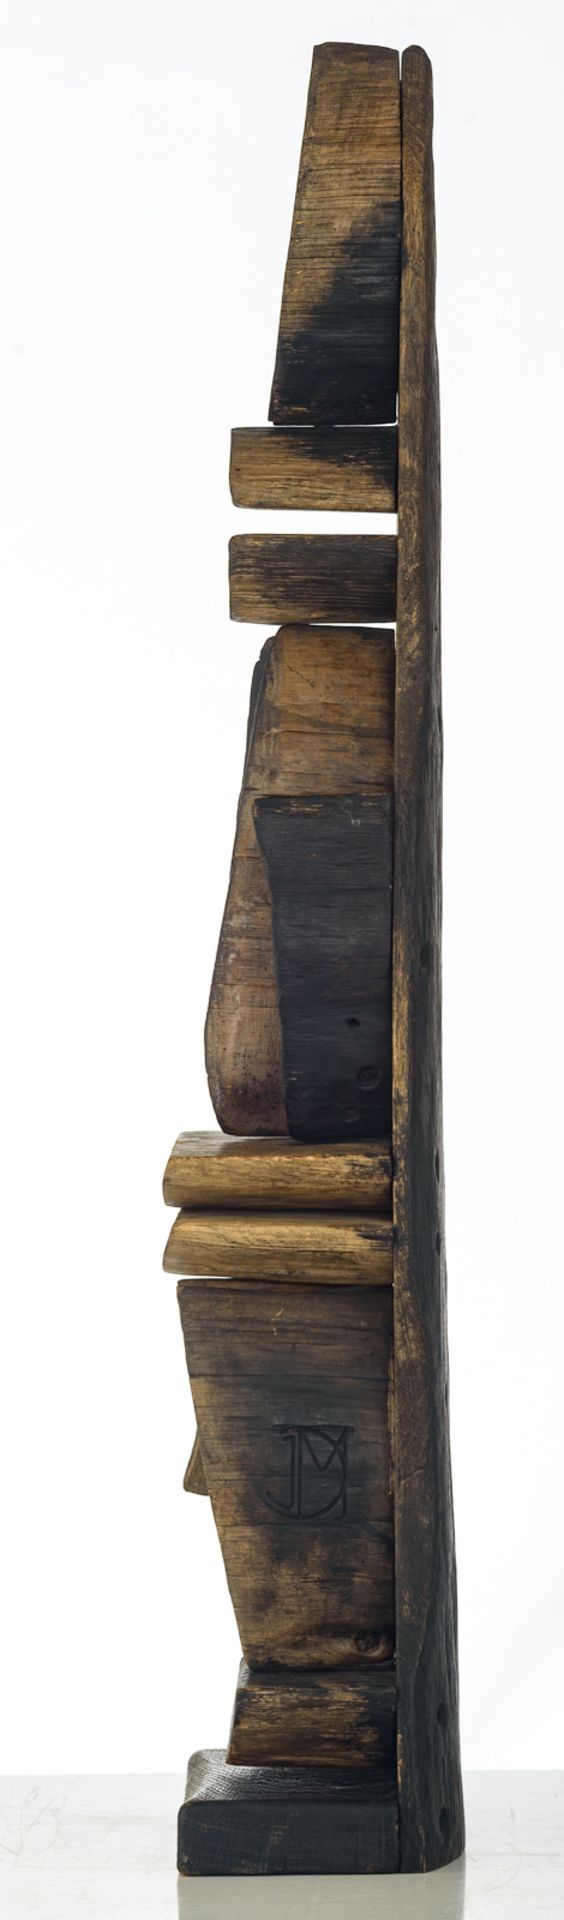 De Maeyer J., 'Totem', wood construction, H 93 cm - Bild 3 aus 6